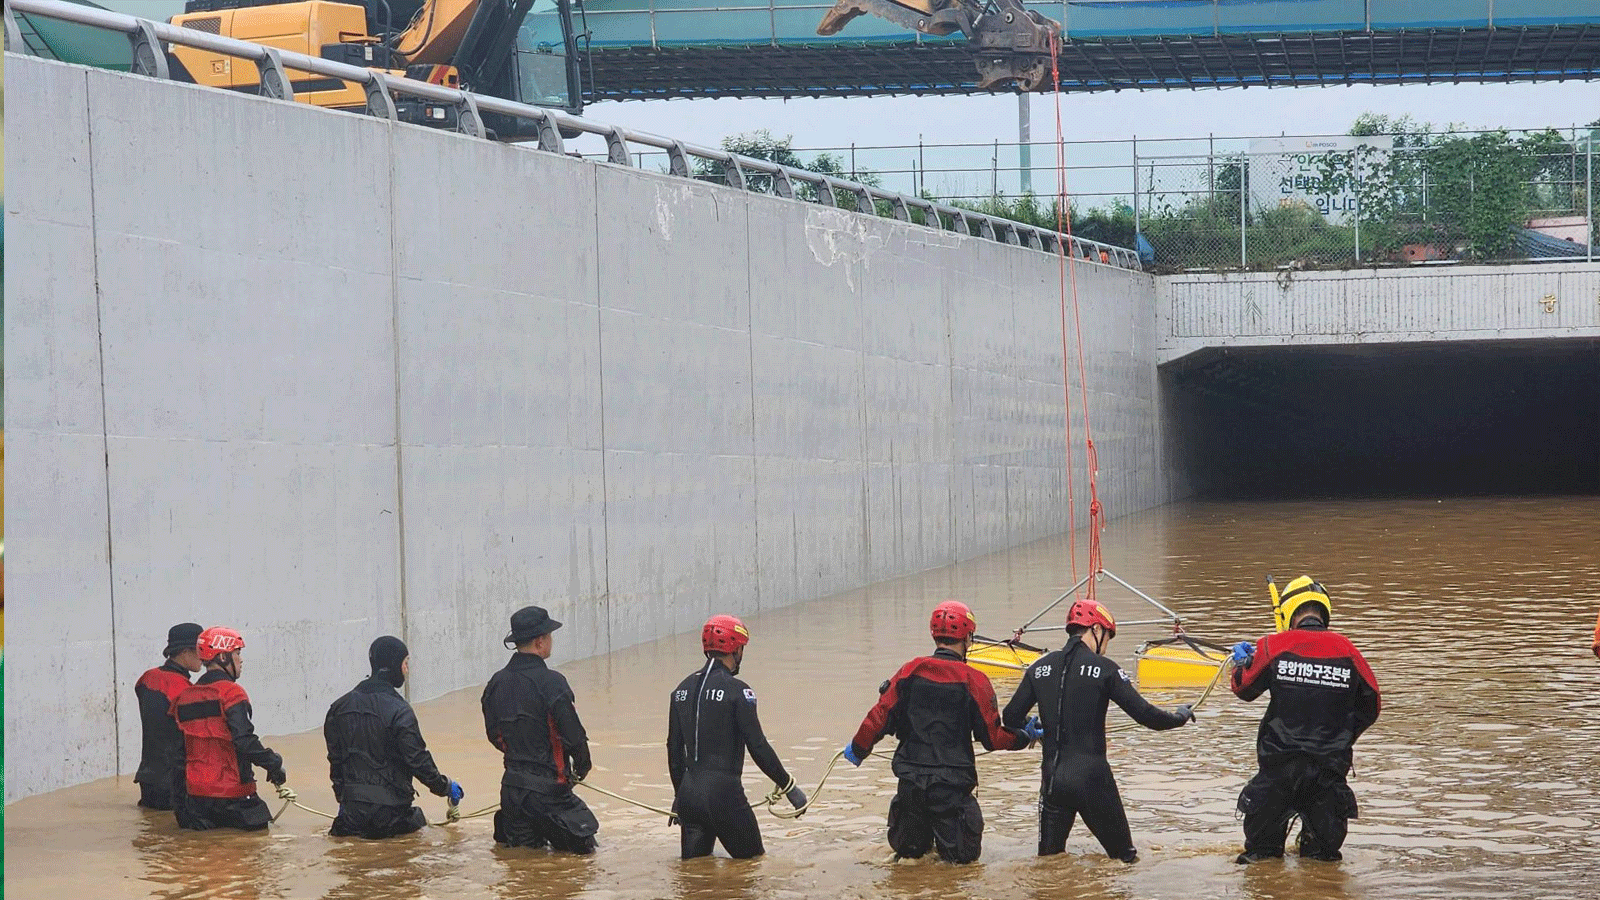 عمال الإنقاذ الكوريون الجنوبيون يبحثون عن الأشخاص المفقودين على طريق مغمور يؤدي إلى نفق تحت الأرض في تشونغجو